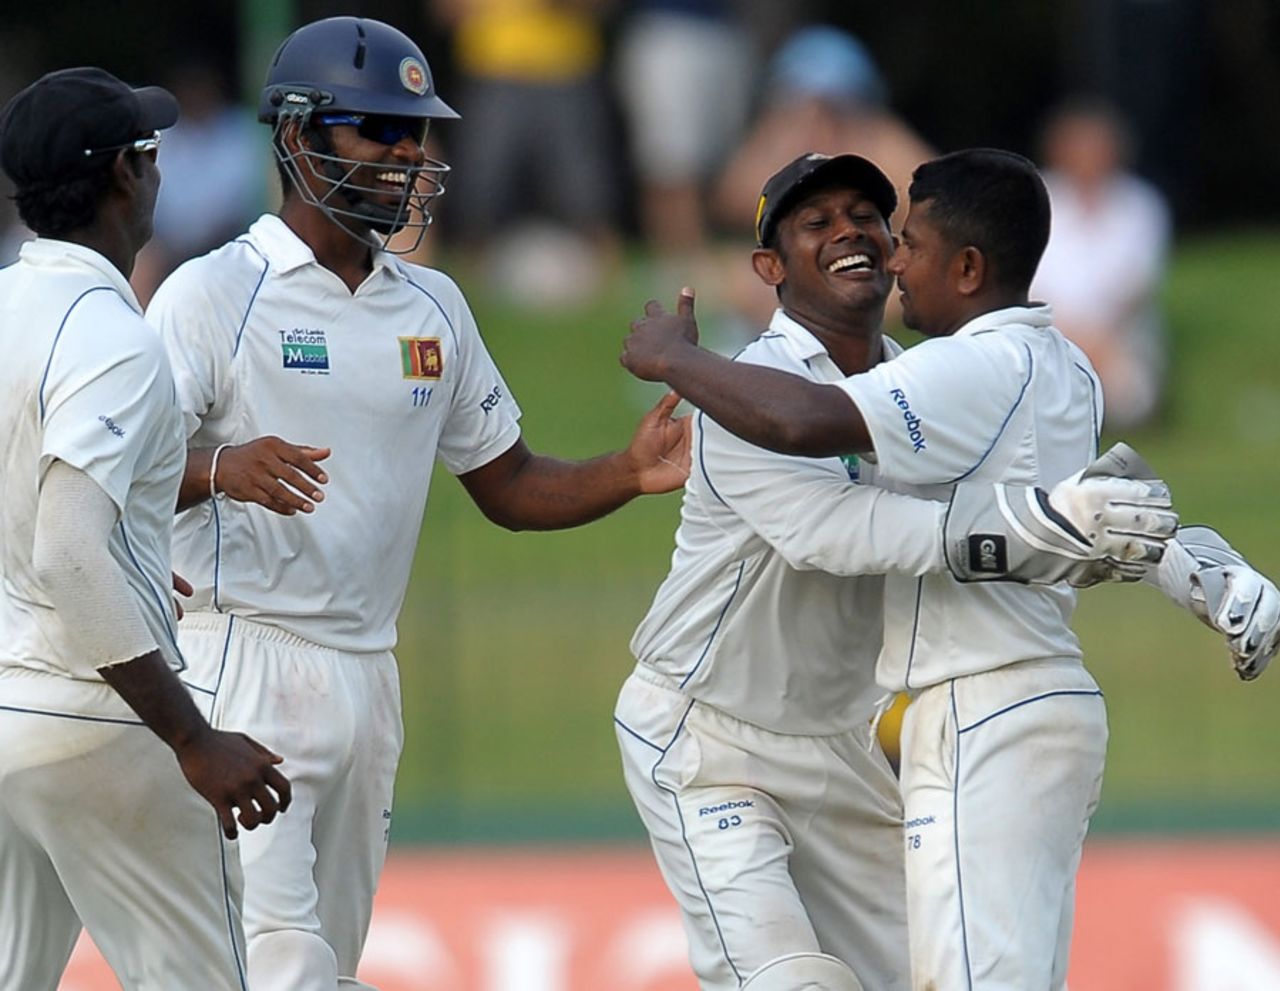 Sri Lanka celebrate Rangana Herath's dismissal of Shaun Marsh, Sri Lanka v Australia, 3rd Test, SSC, Colombo, 1st day, September 16, 2011